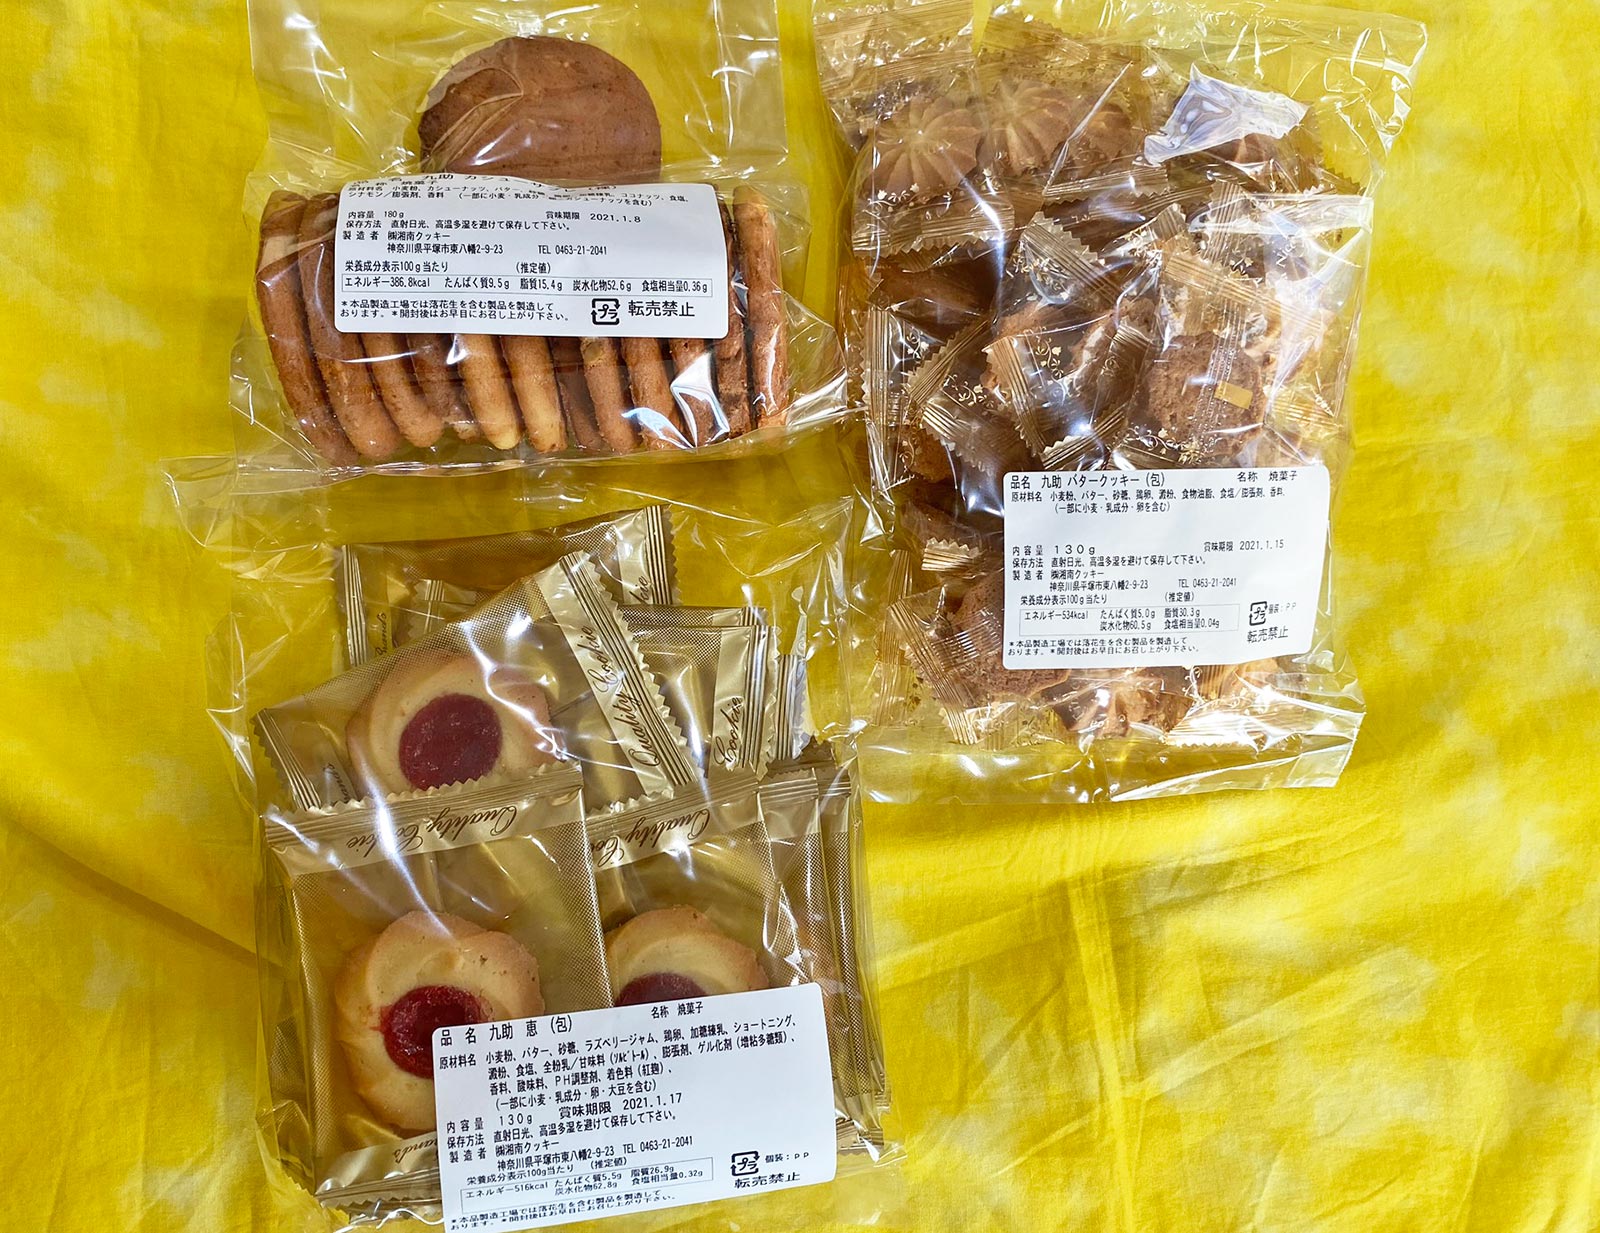 湘南クッキーで「5kg 税込1000円」の激安クッキーを購入する | 「せき